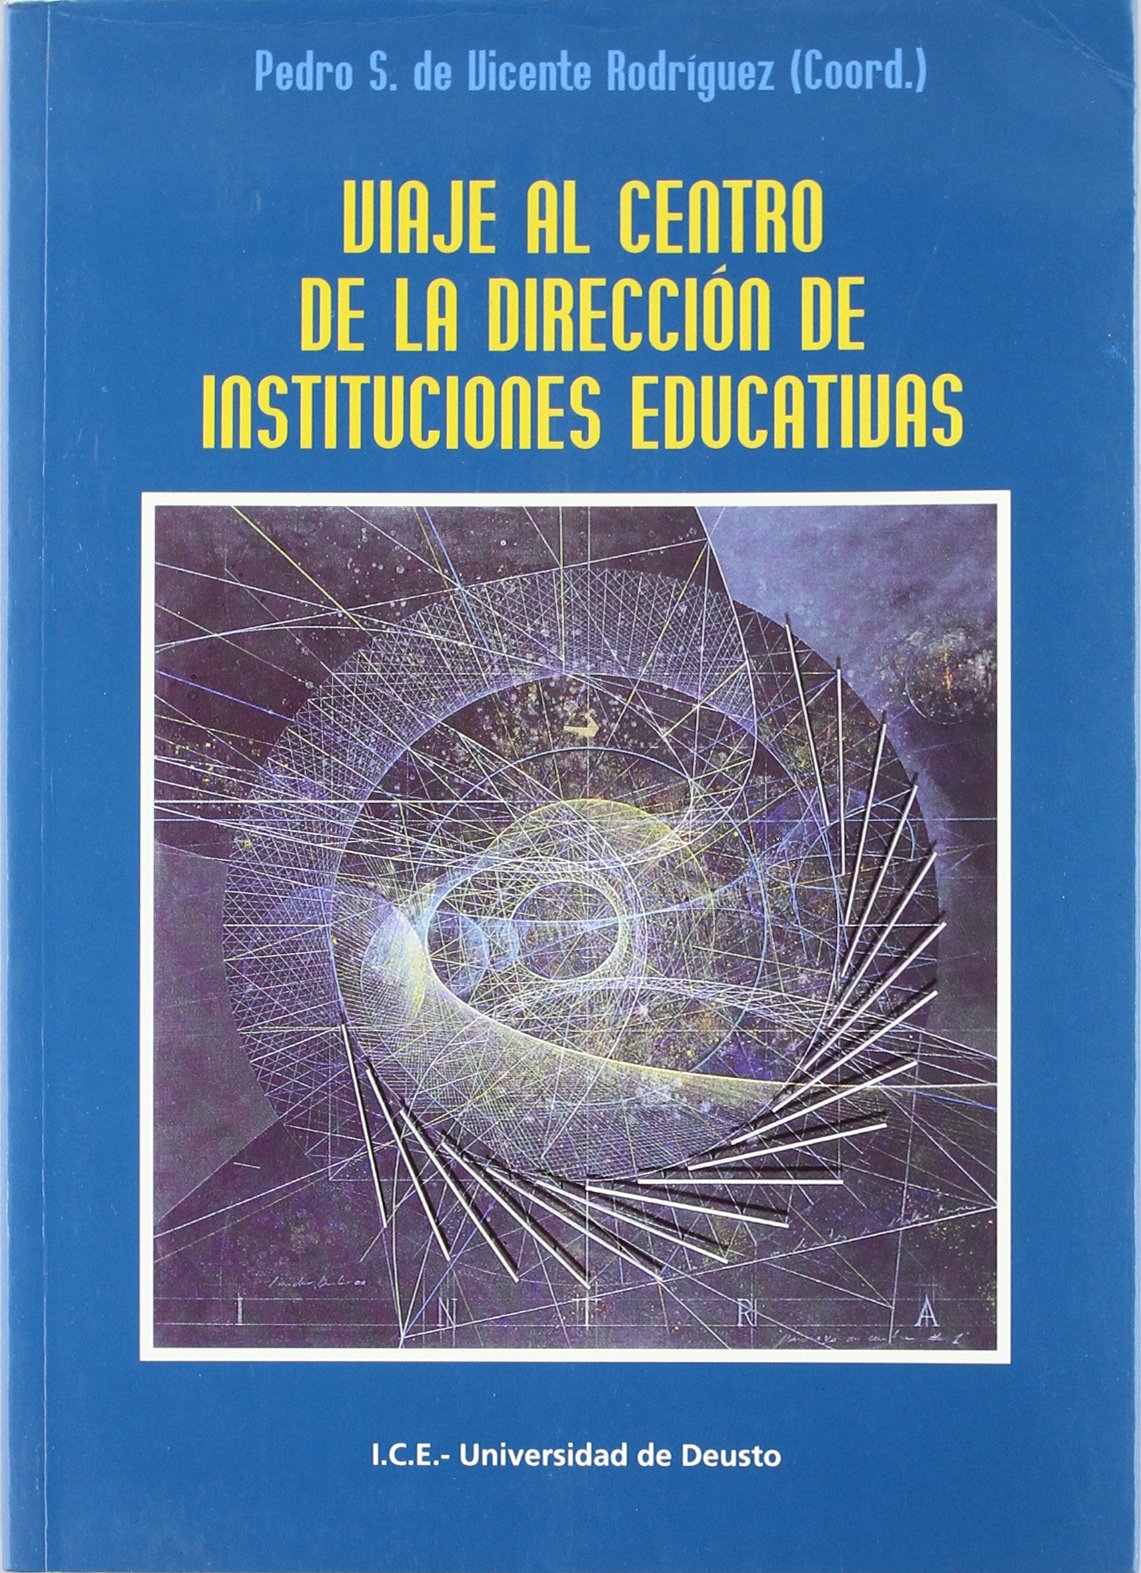 Imagen de portada del libro Viaje al centro de la dirección de instituciones educativas